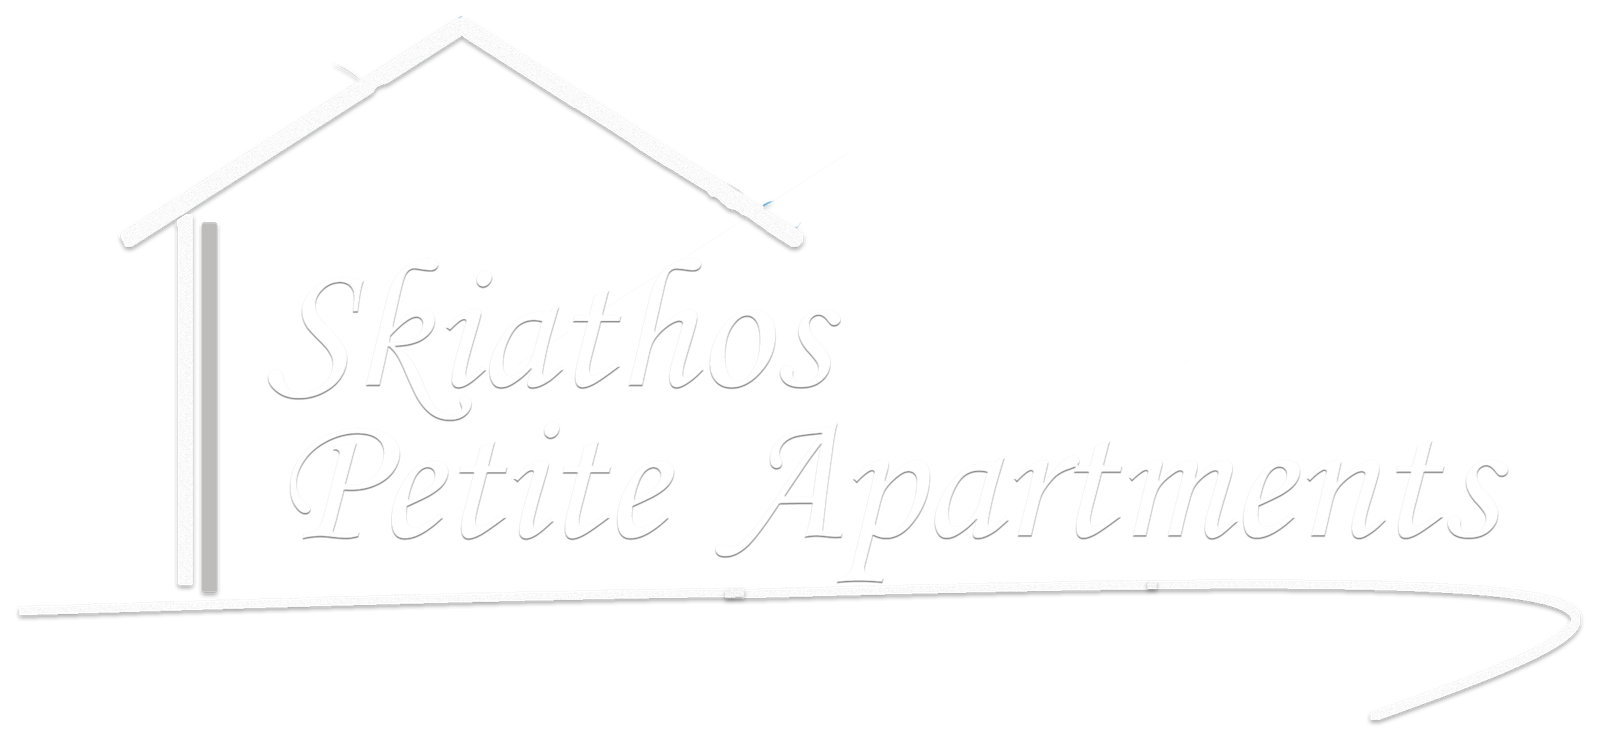 Skiathos Petite Apartments | Login - Skiathos Petite Apartments